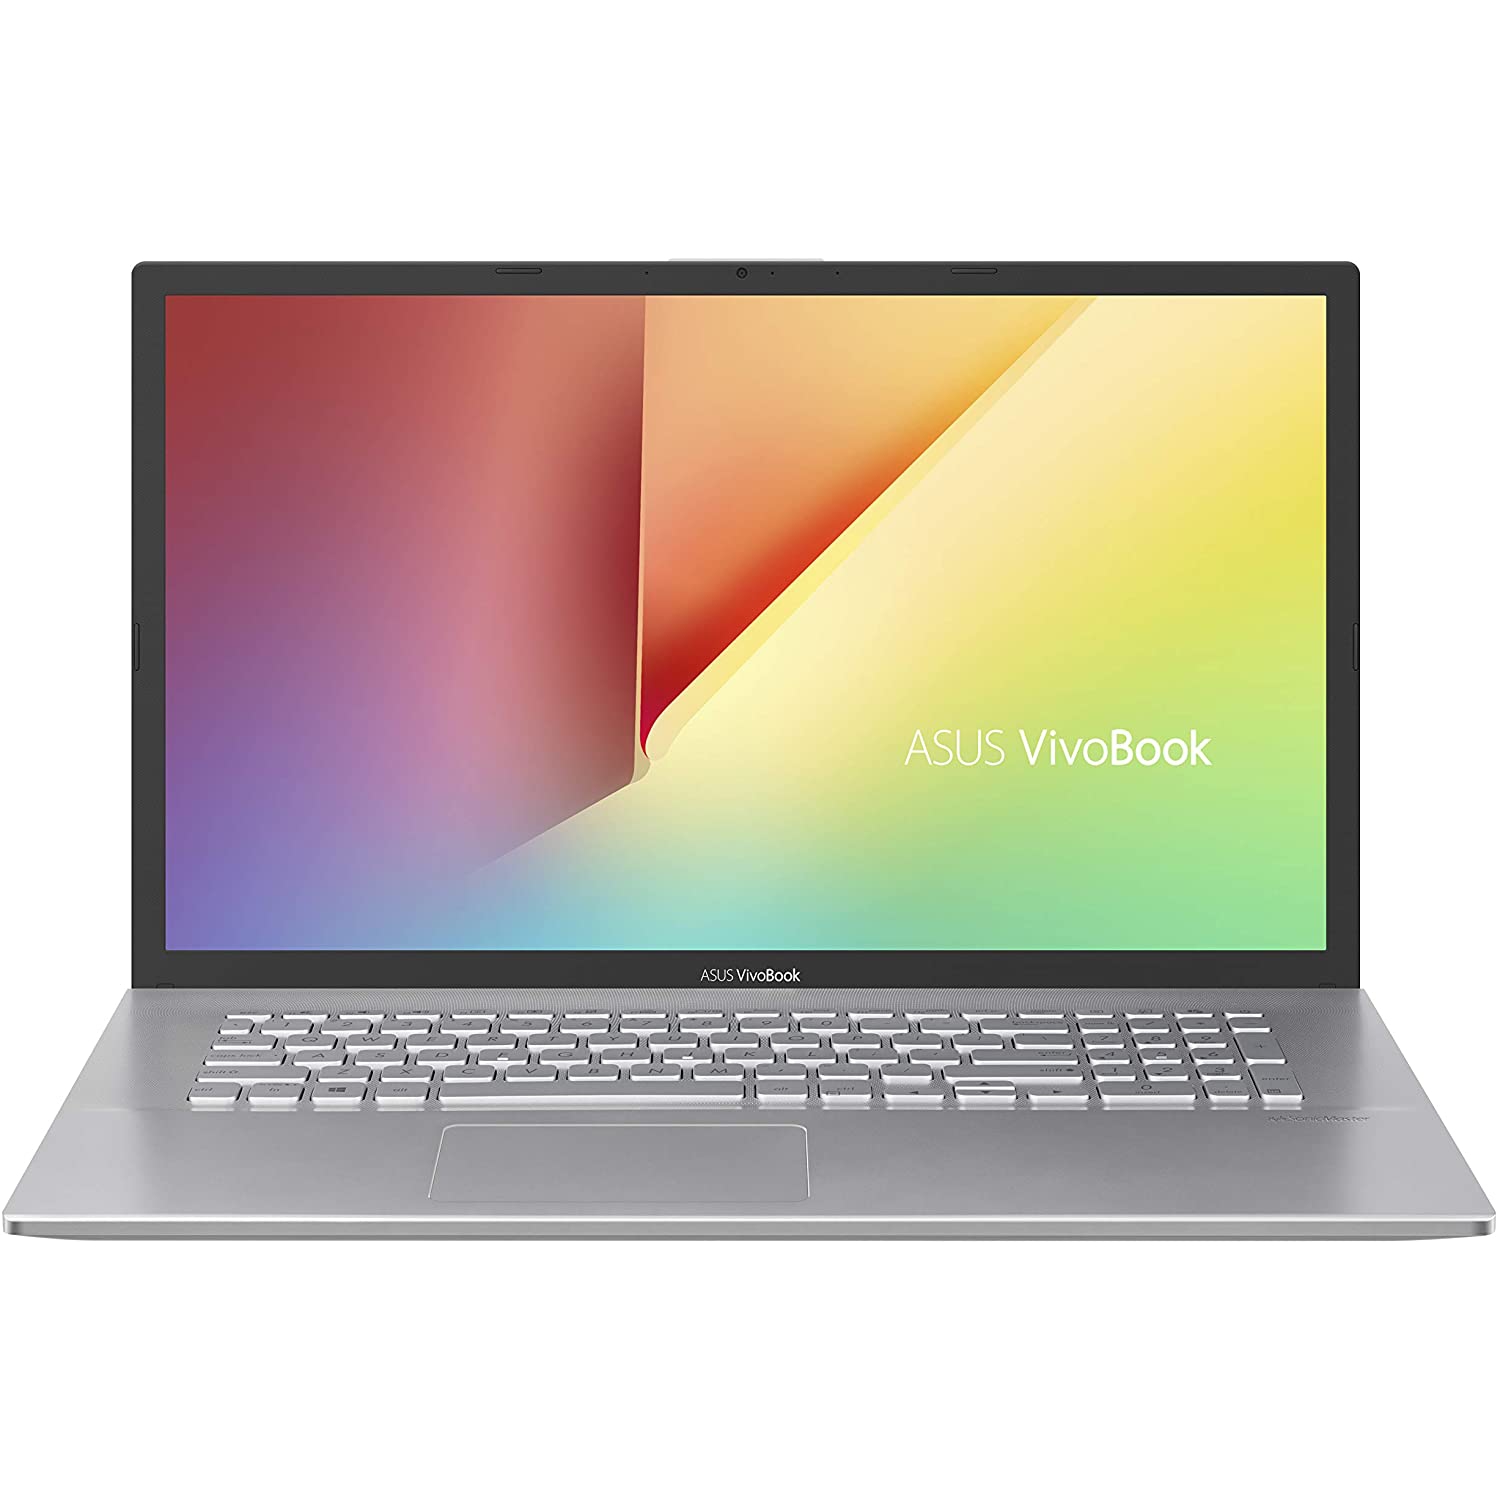 Custom ASUS VivoBook 17 Laptop (Intel i7-1065G7, 16GB RAM, 1TB PCIe SSD, Intel HD 610, 17.3" HD+ (1600x900), Win 10 Pro)